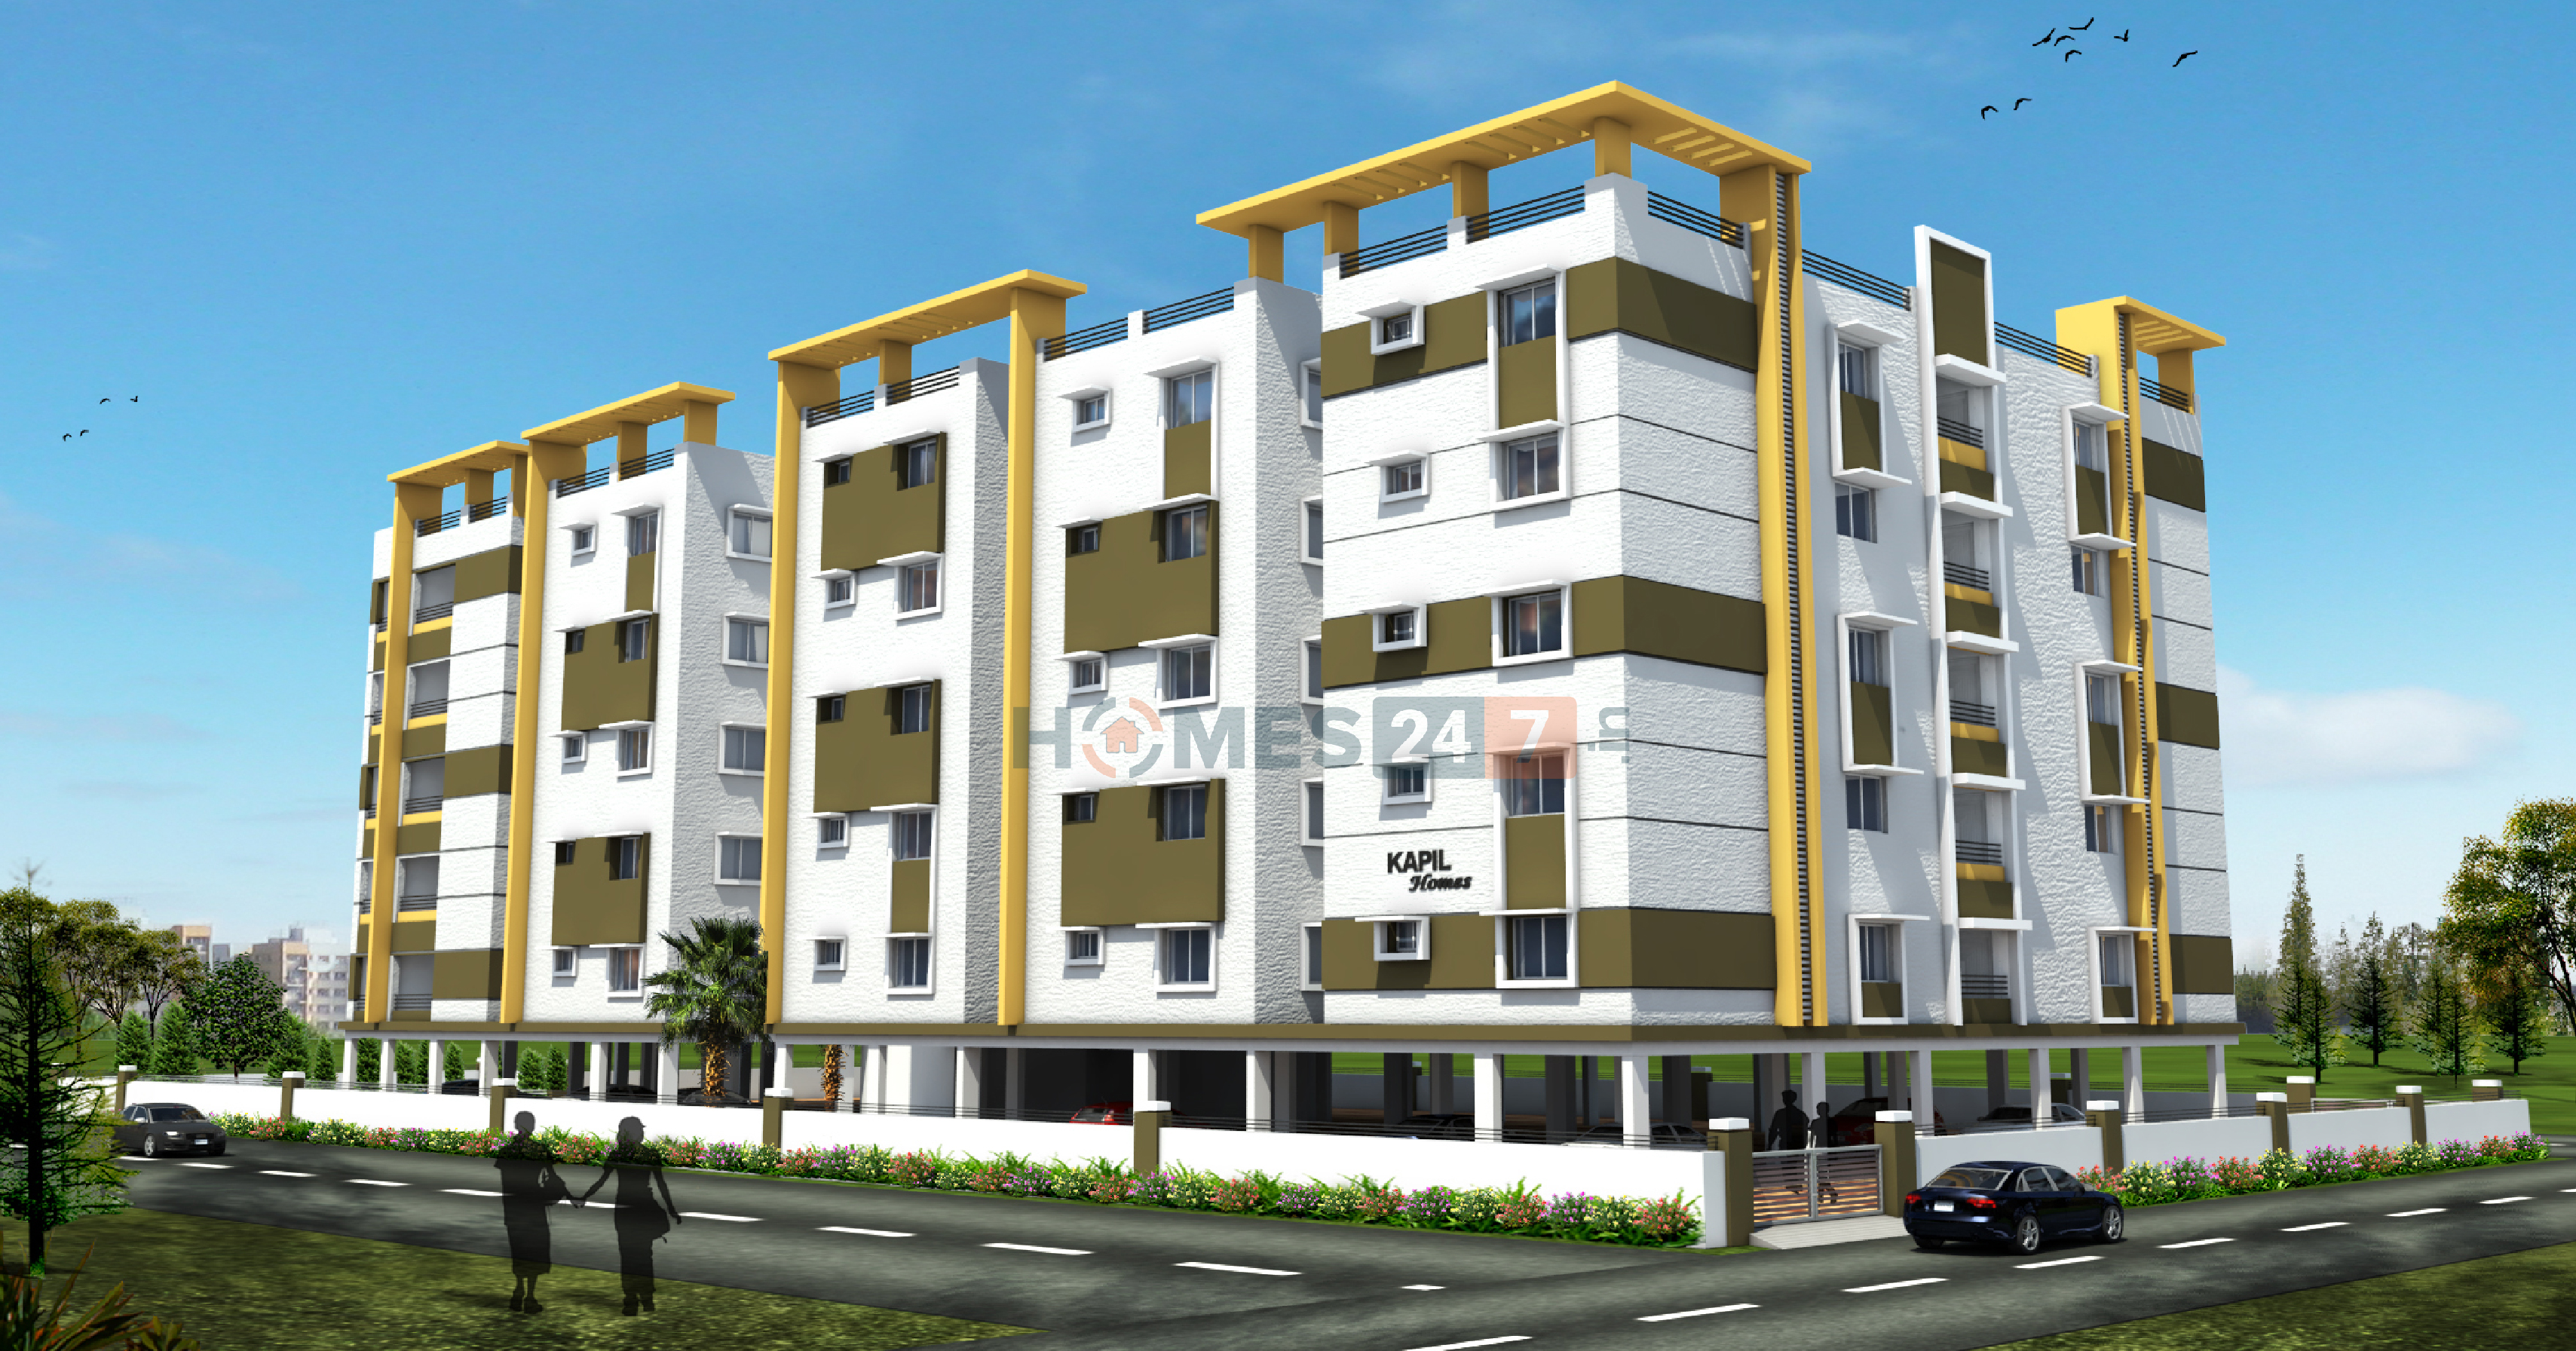 Kapil Kausalya Apartment Block 2 Cover Image